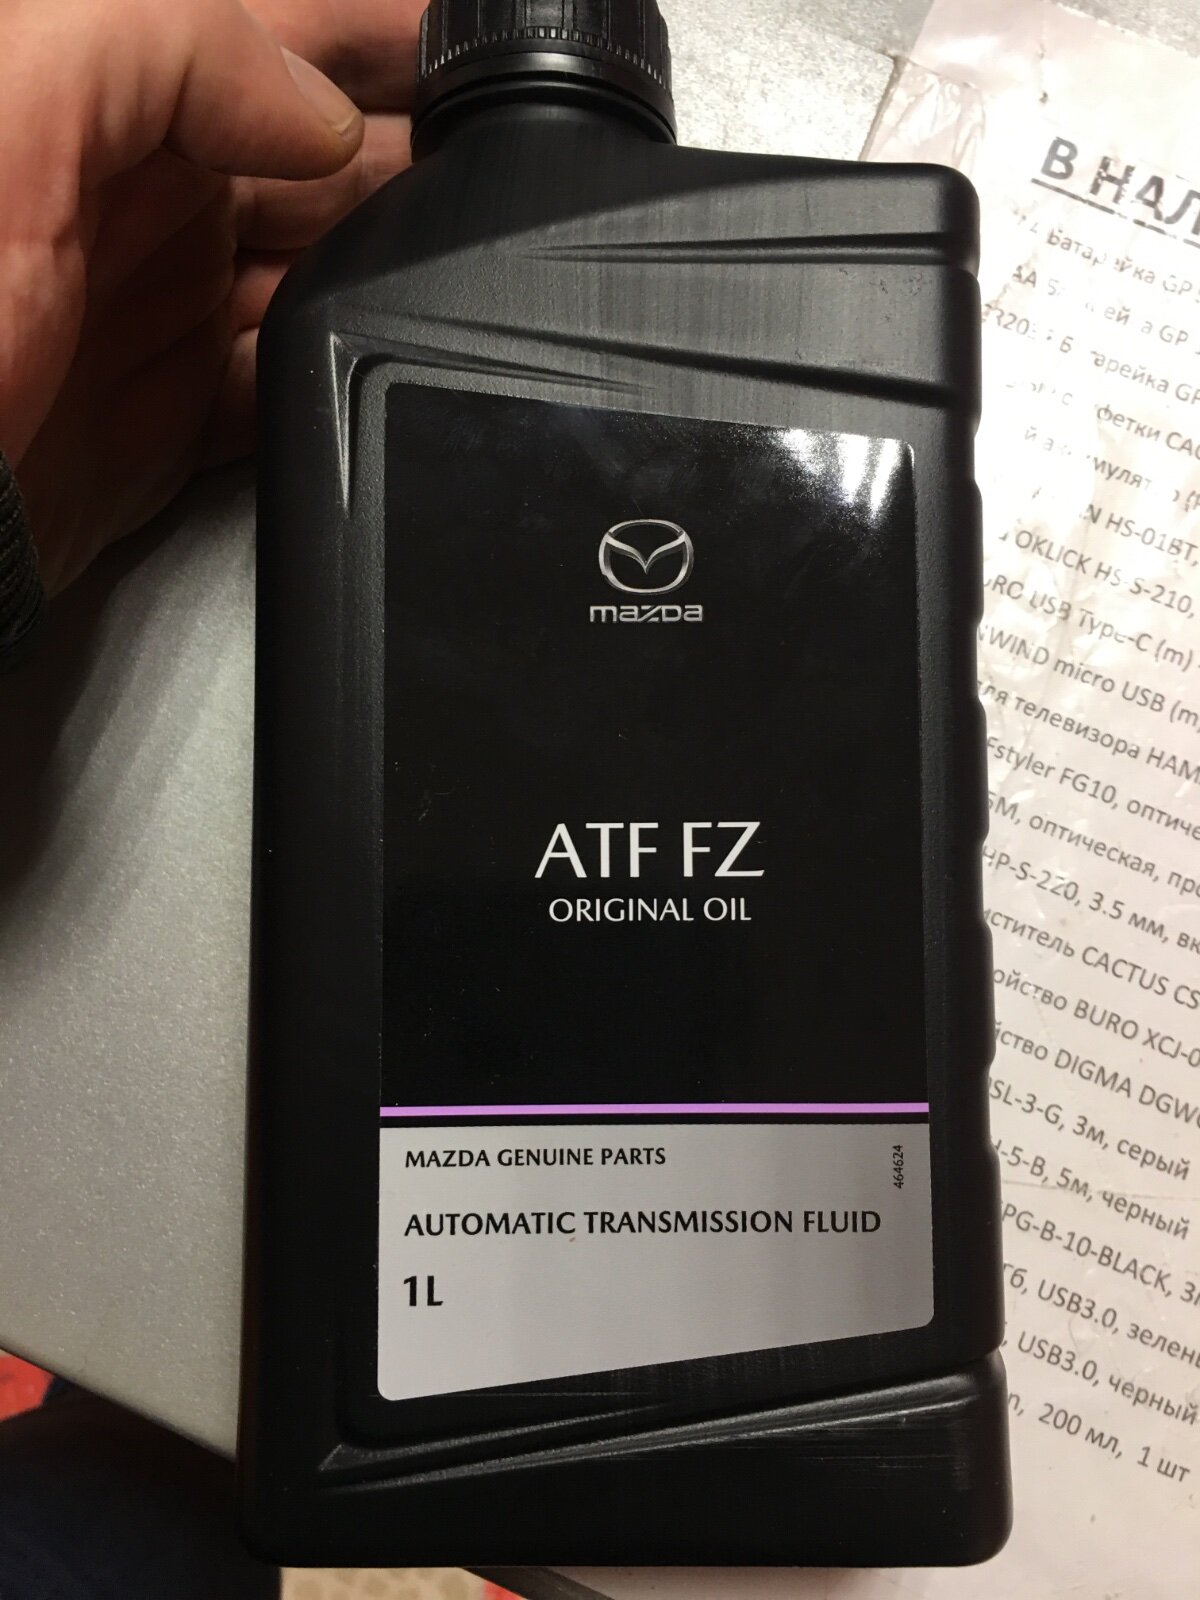 Ngn atf fz. Mazda ATF FZ. ATF FZ Mazda аналоги. Mazda Original Oil ATF FZ. Mazda ATF FZ цвет.